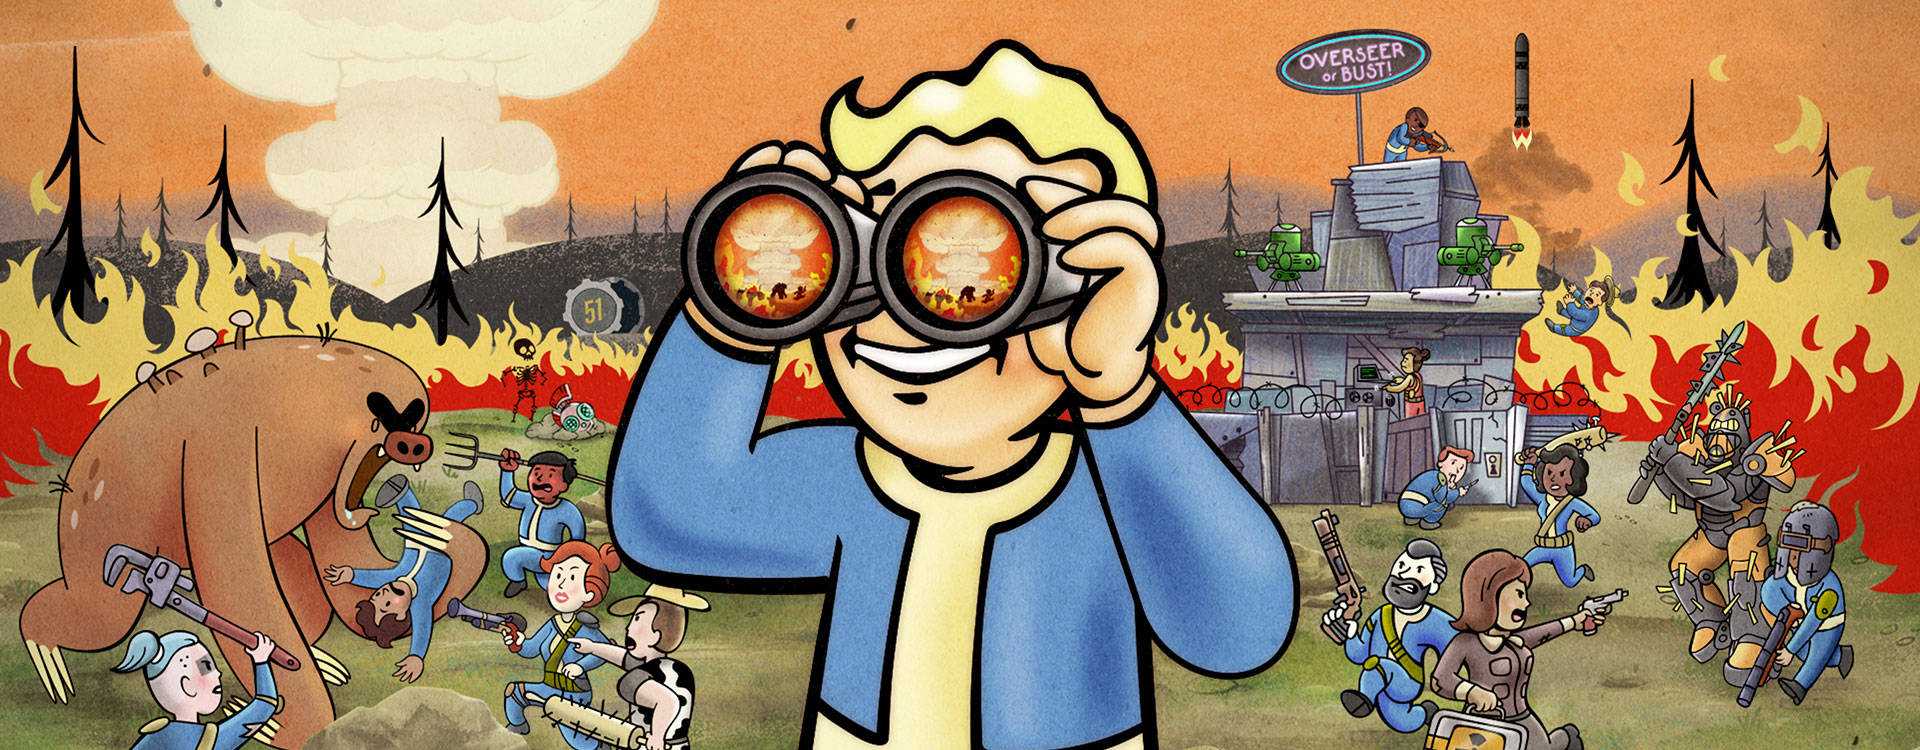 Spieler lieben die neue Karte in Fallout 76: „Besser als je zuvor“